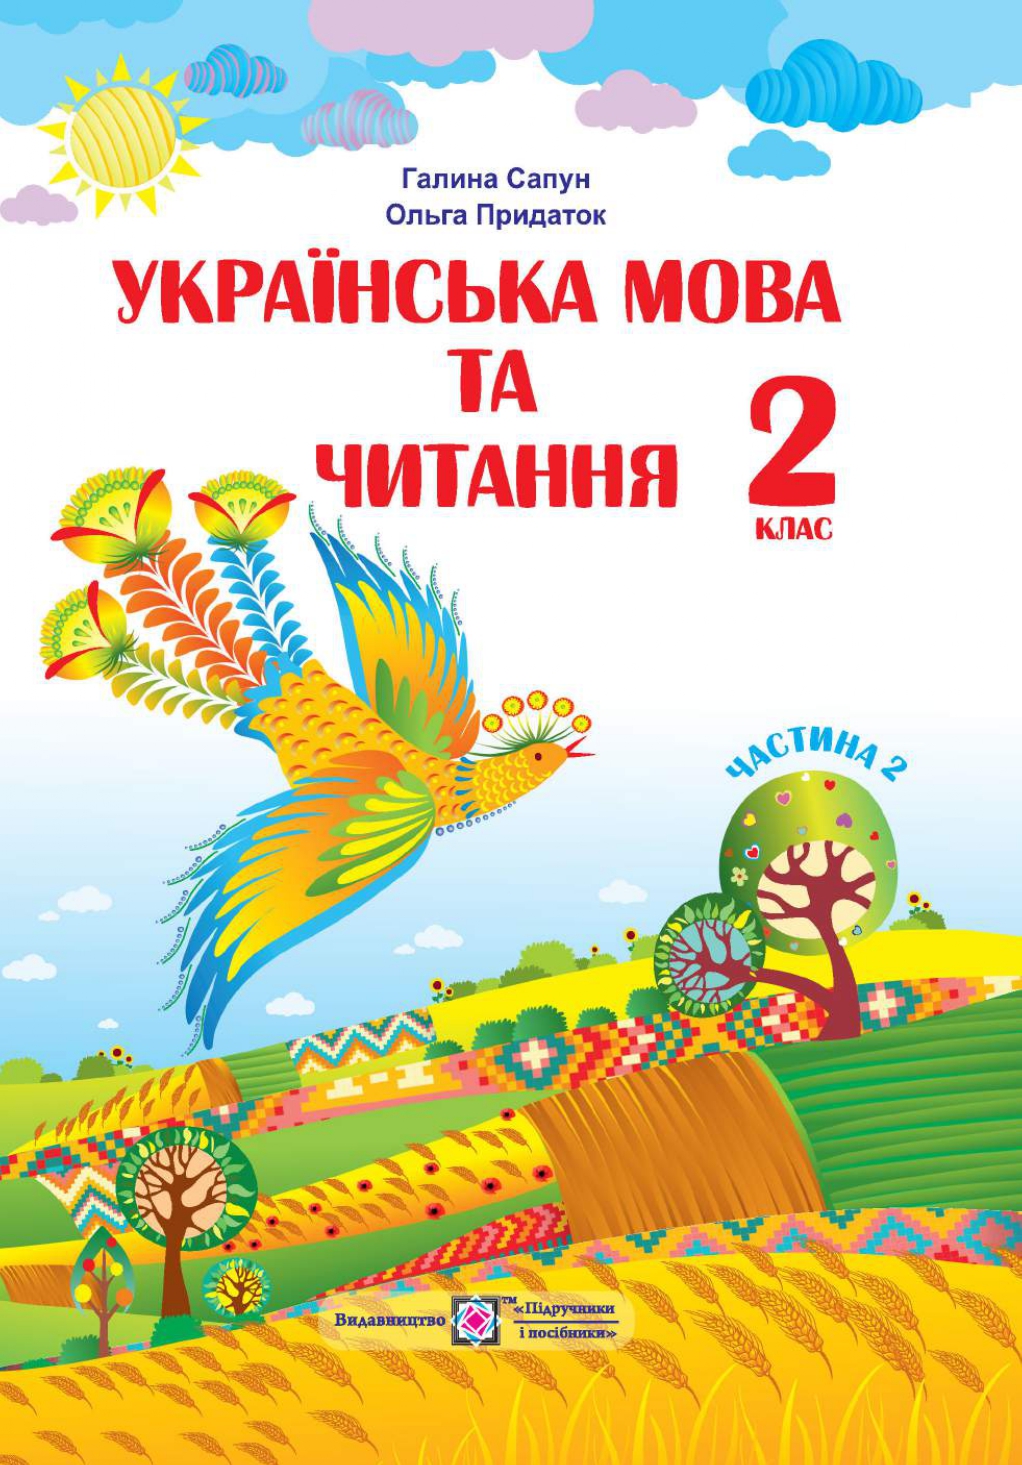 Українська мова та читання 2 клас Г. Сапун, О. Придаток 2019